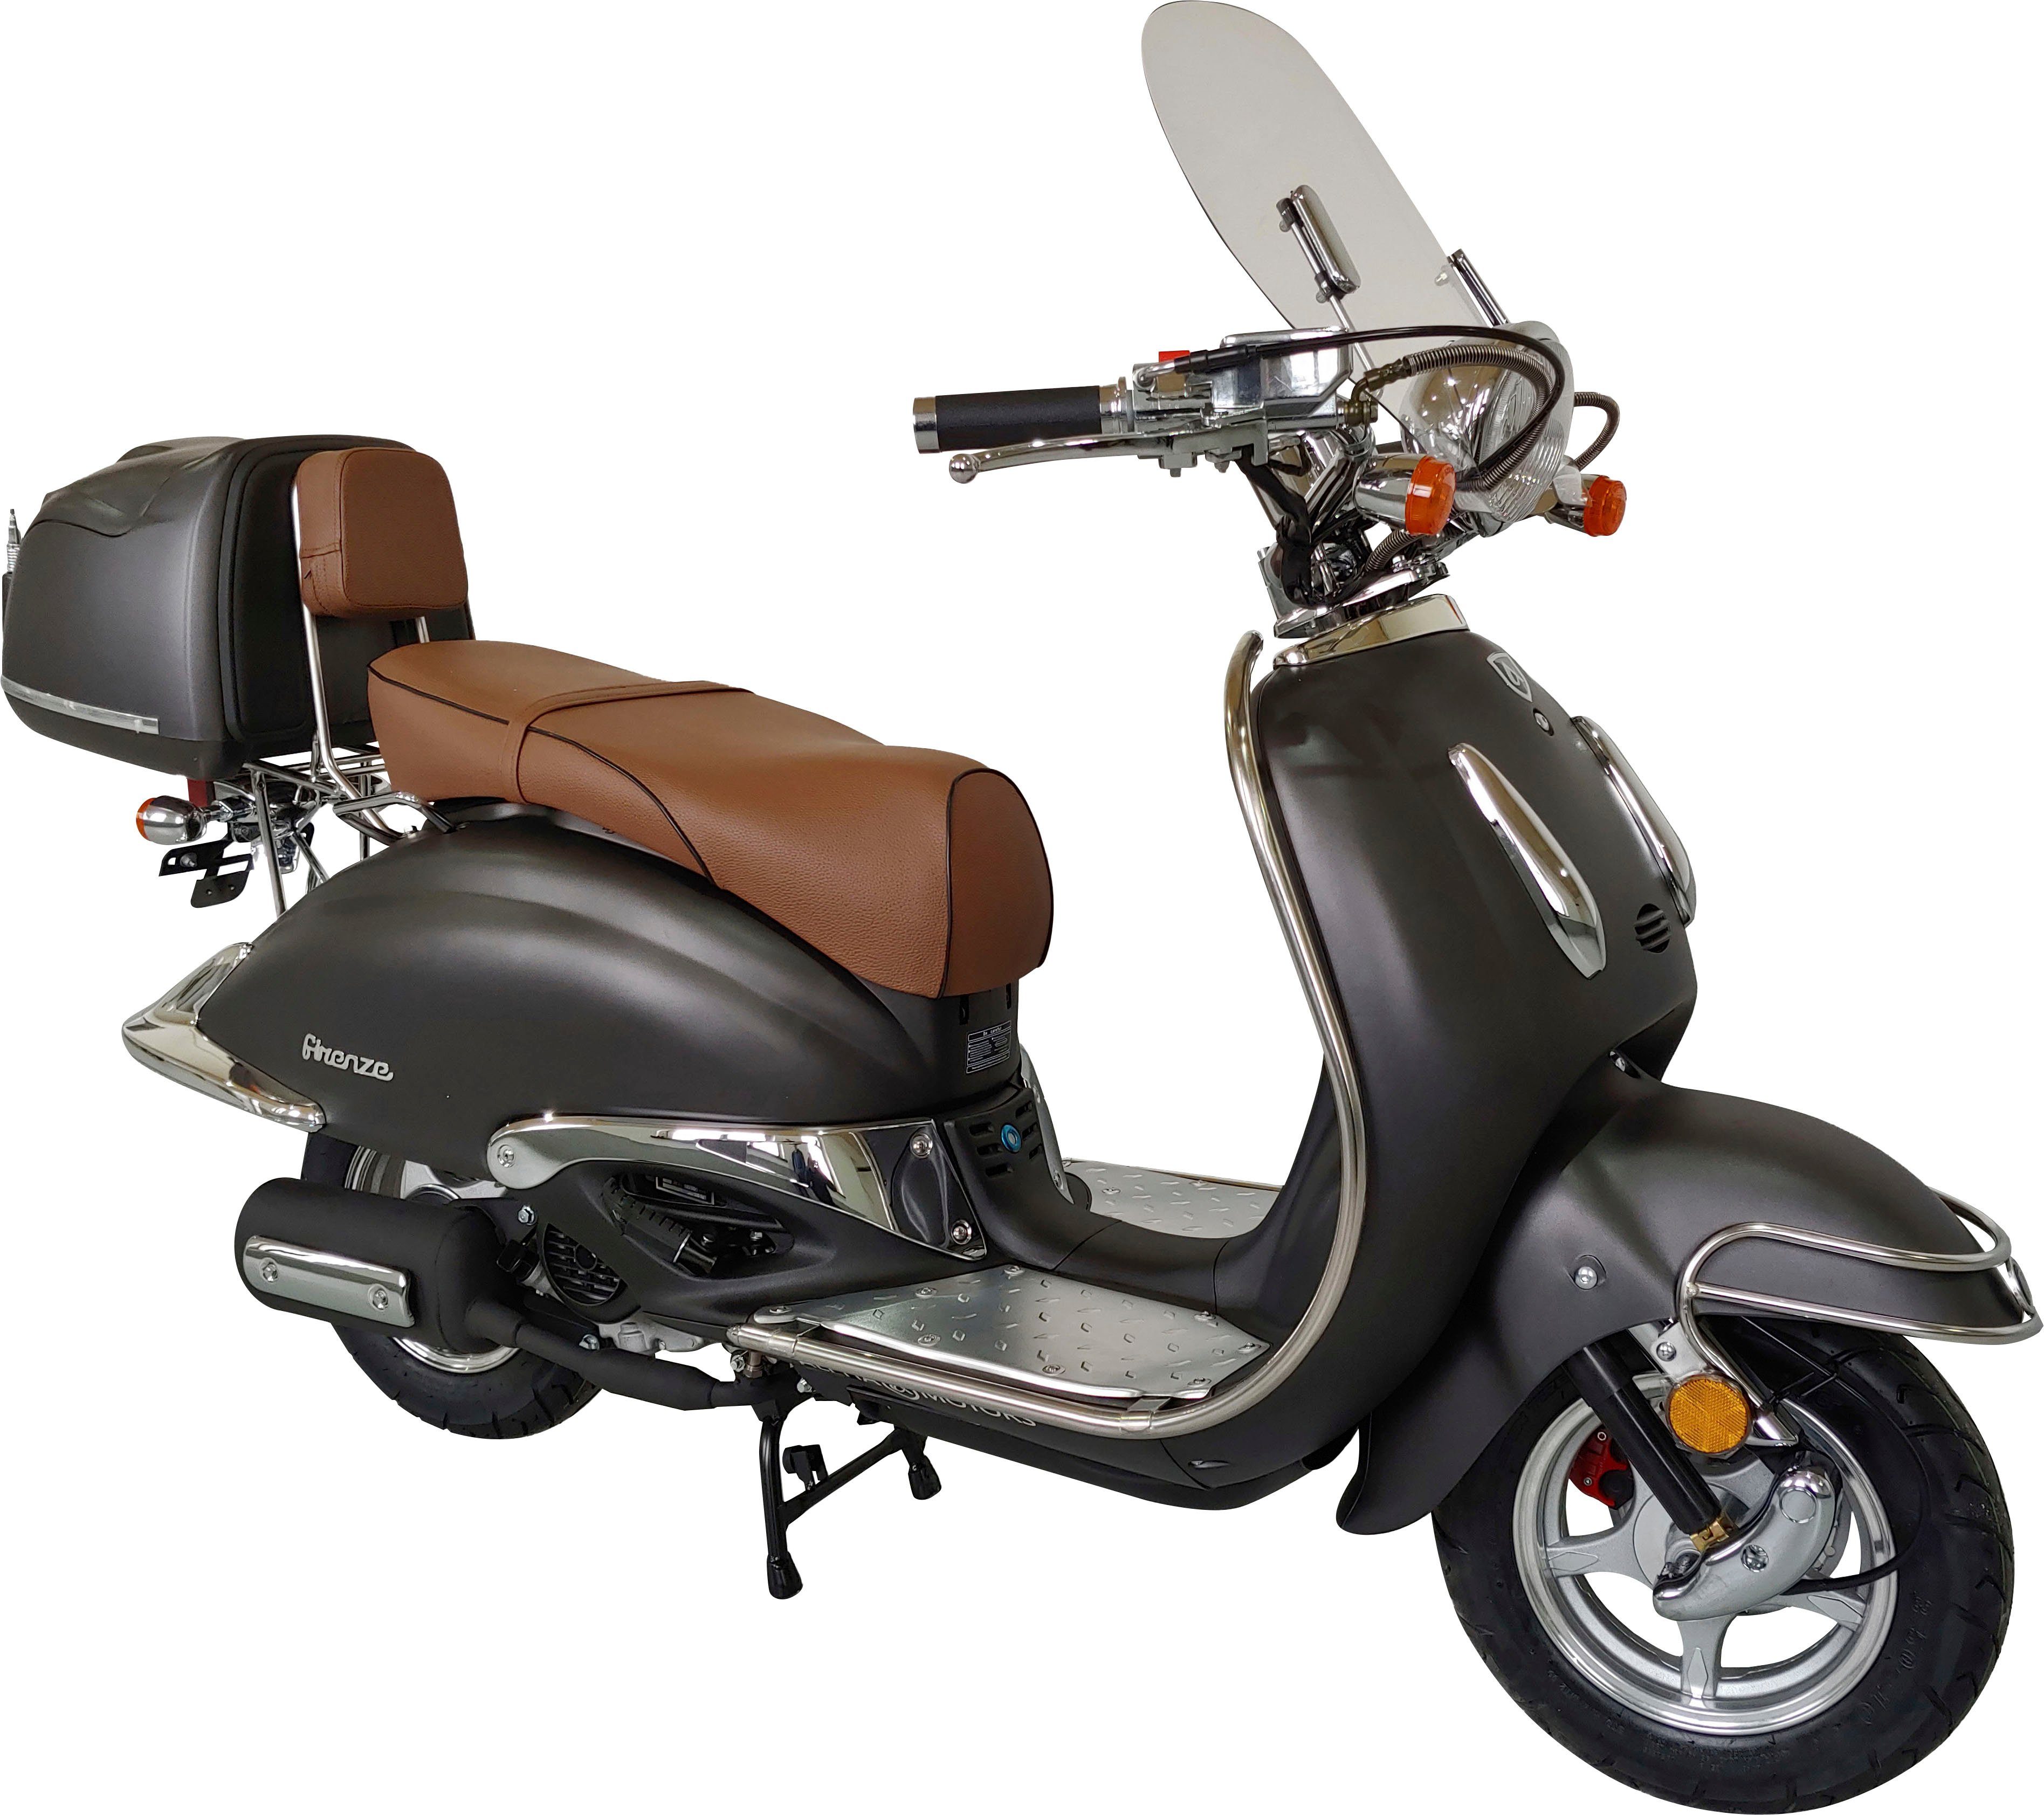 Alpha Motors Motorroller 50 ccm, braun Firenze 5 Limited, mattschwarz 45 km/h, | Euro